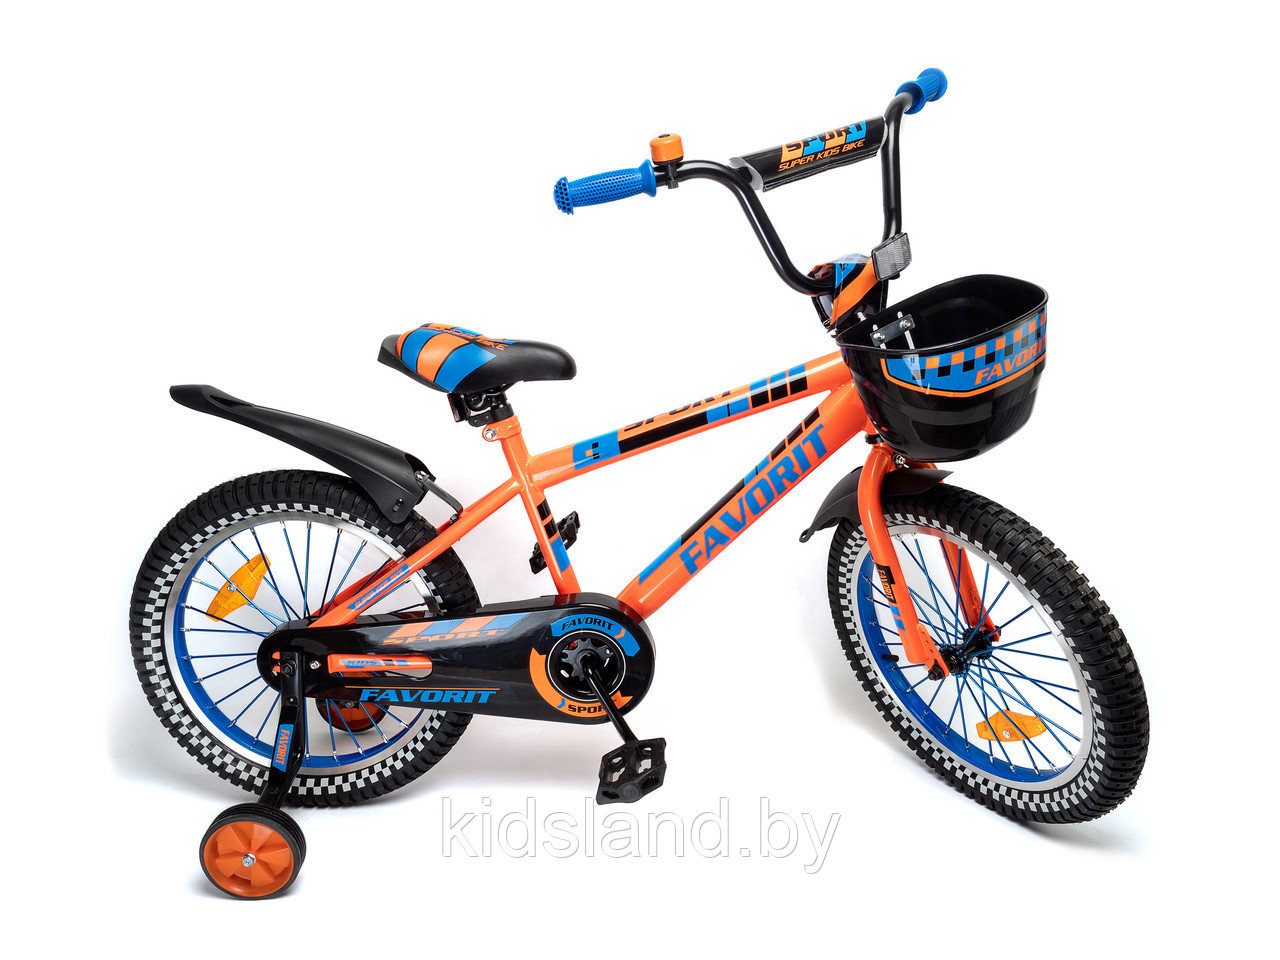 Детский велосипед Favorit  SPORT 18'' оранжевый, фото 1